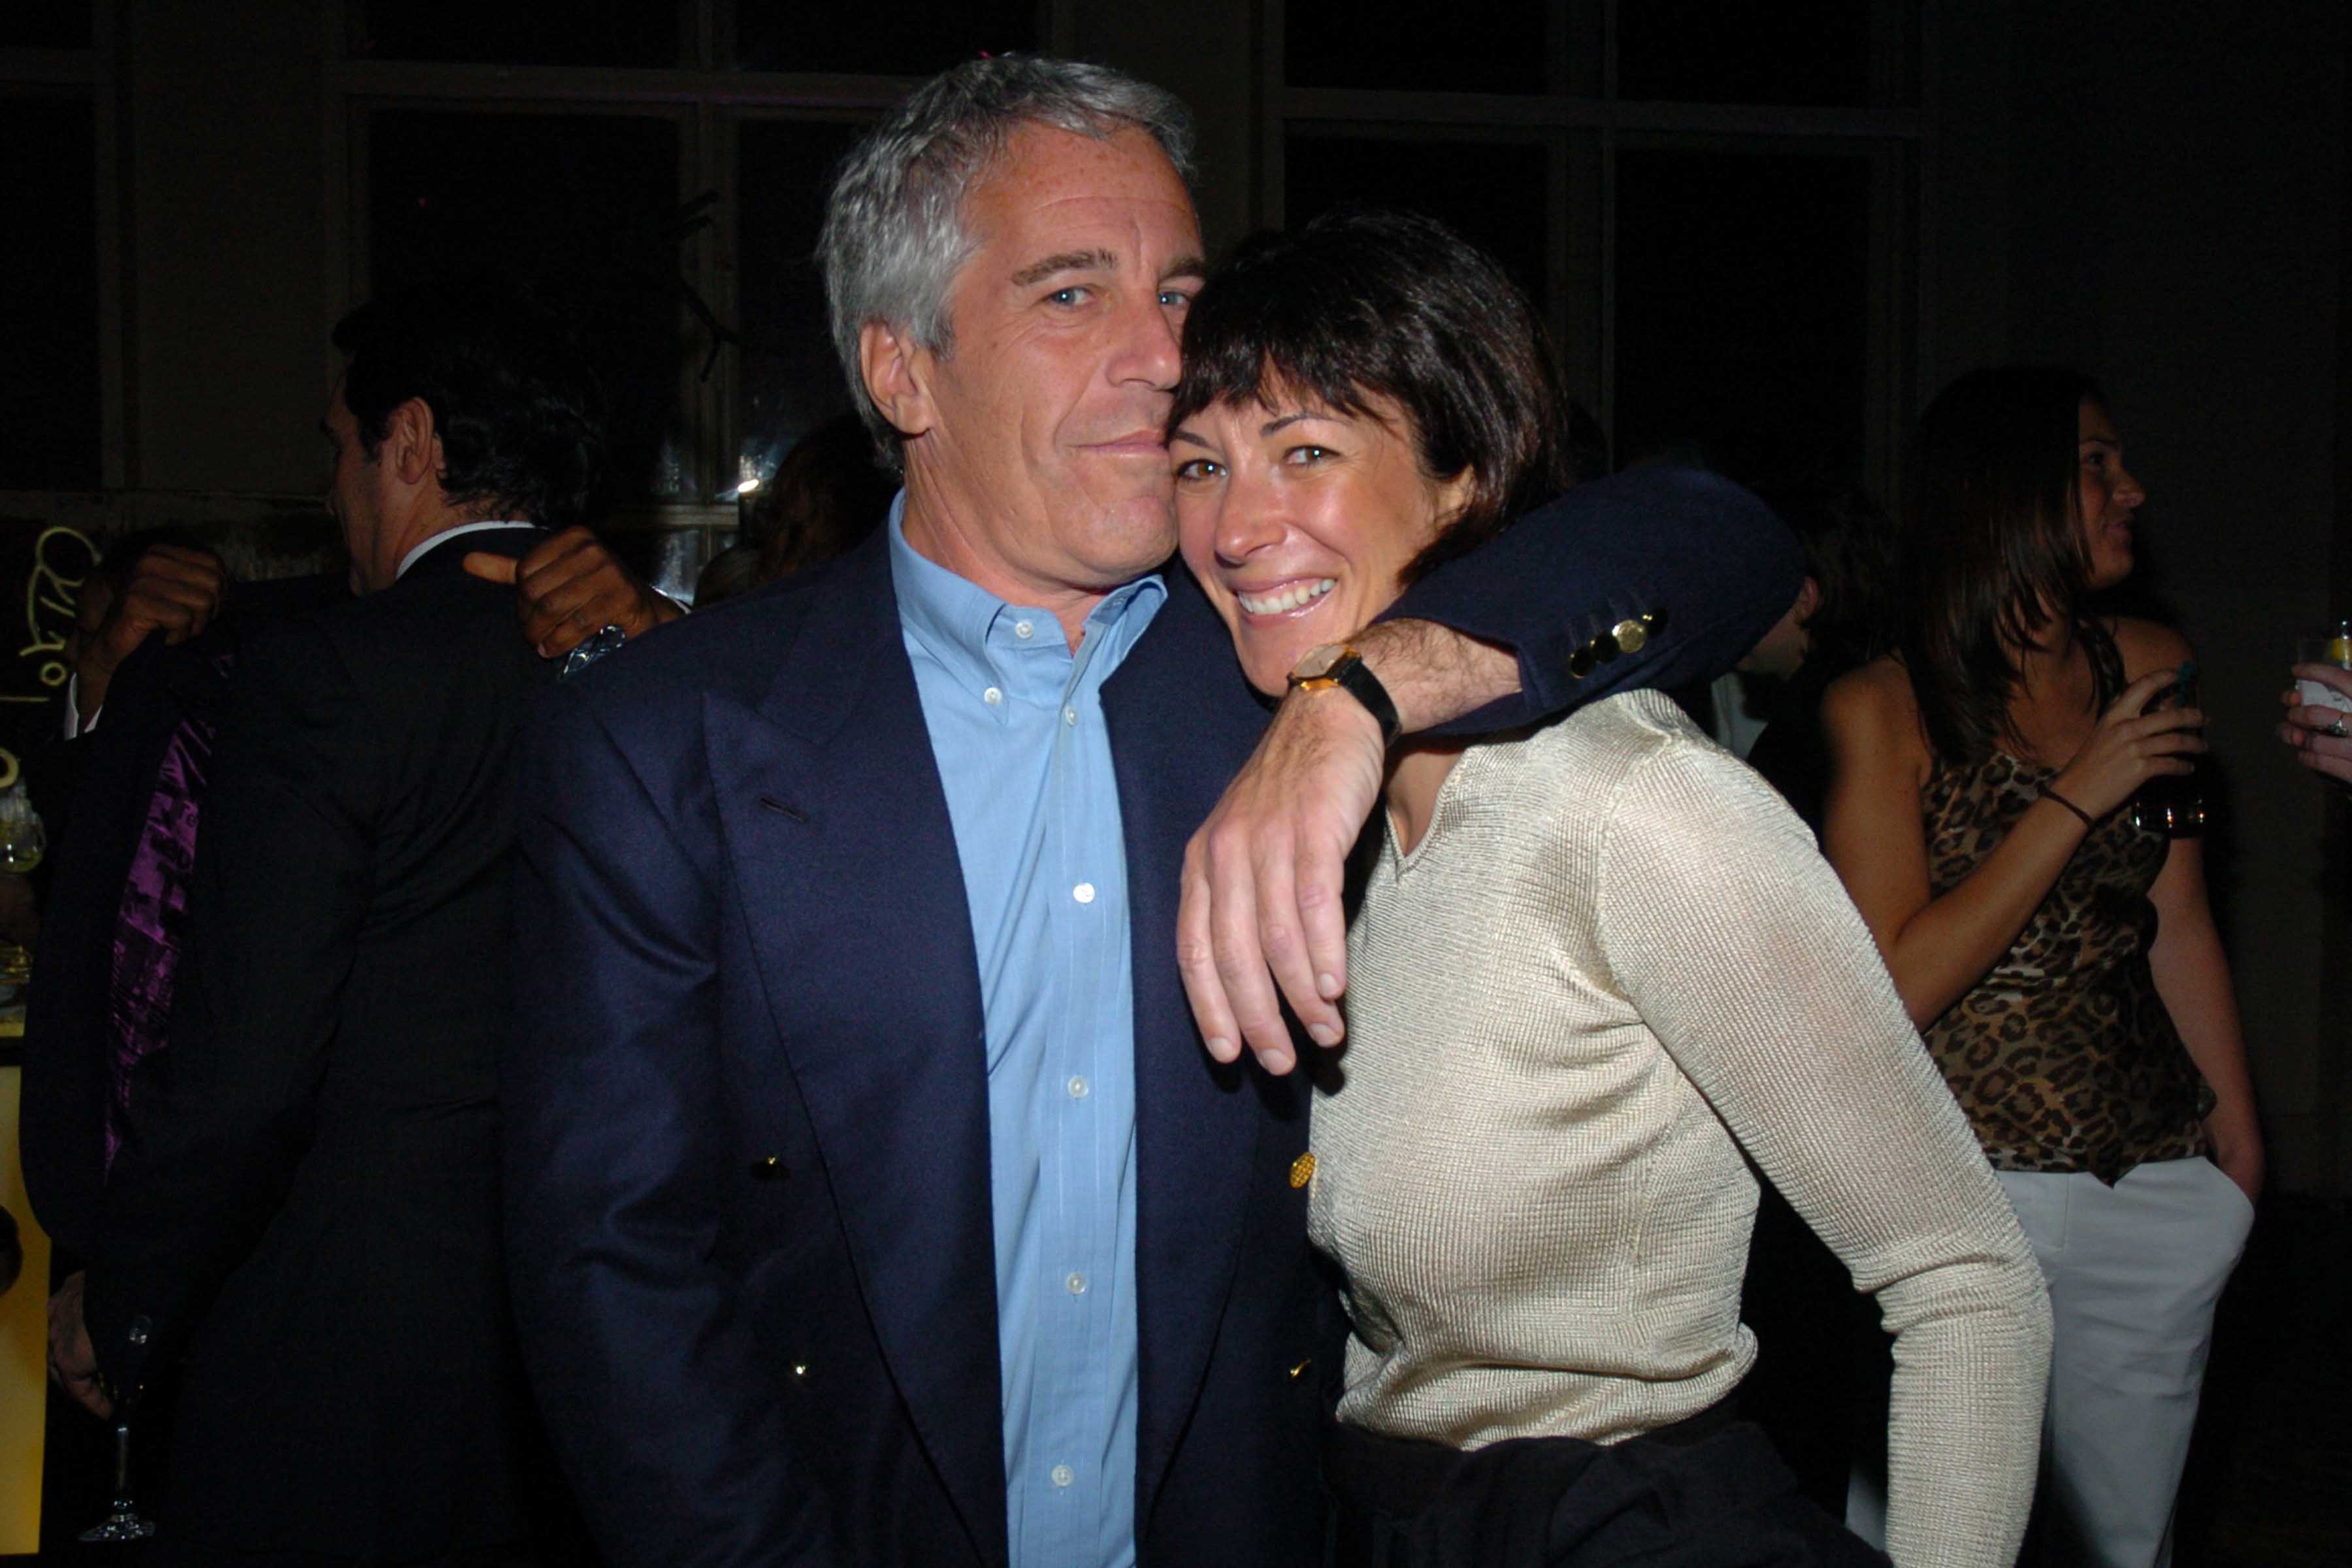 Z Epsteinem w 2005 roku /(Fot. Getty Images)